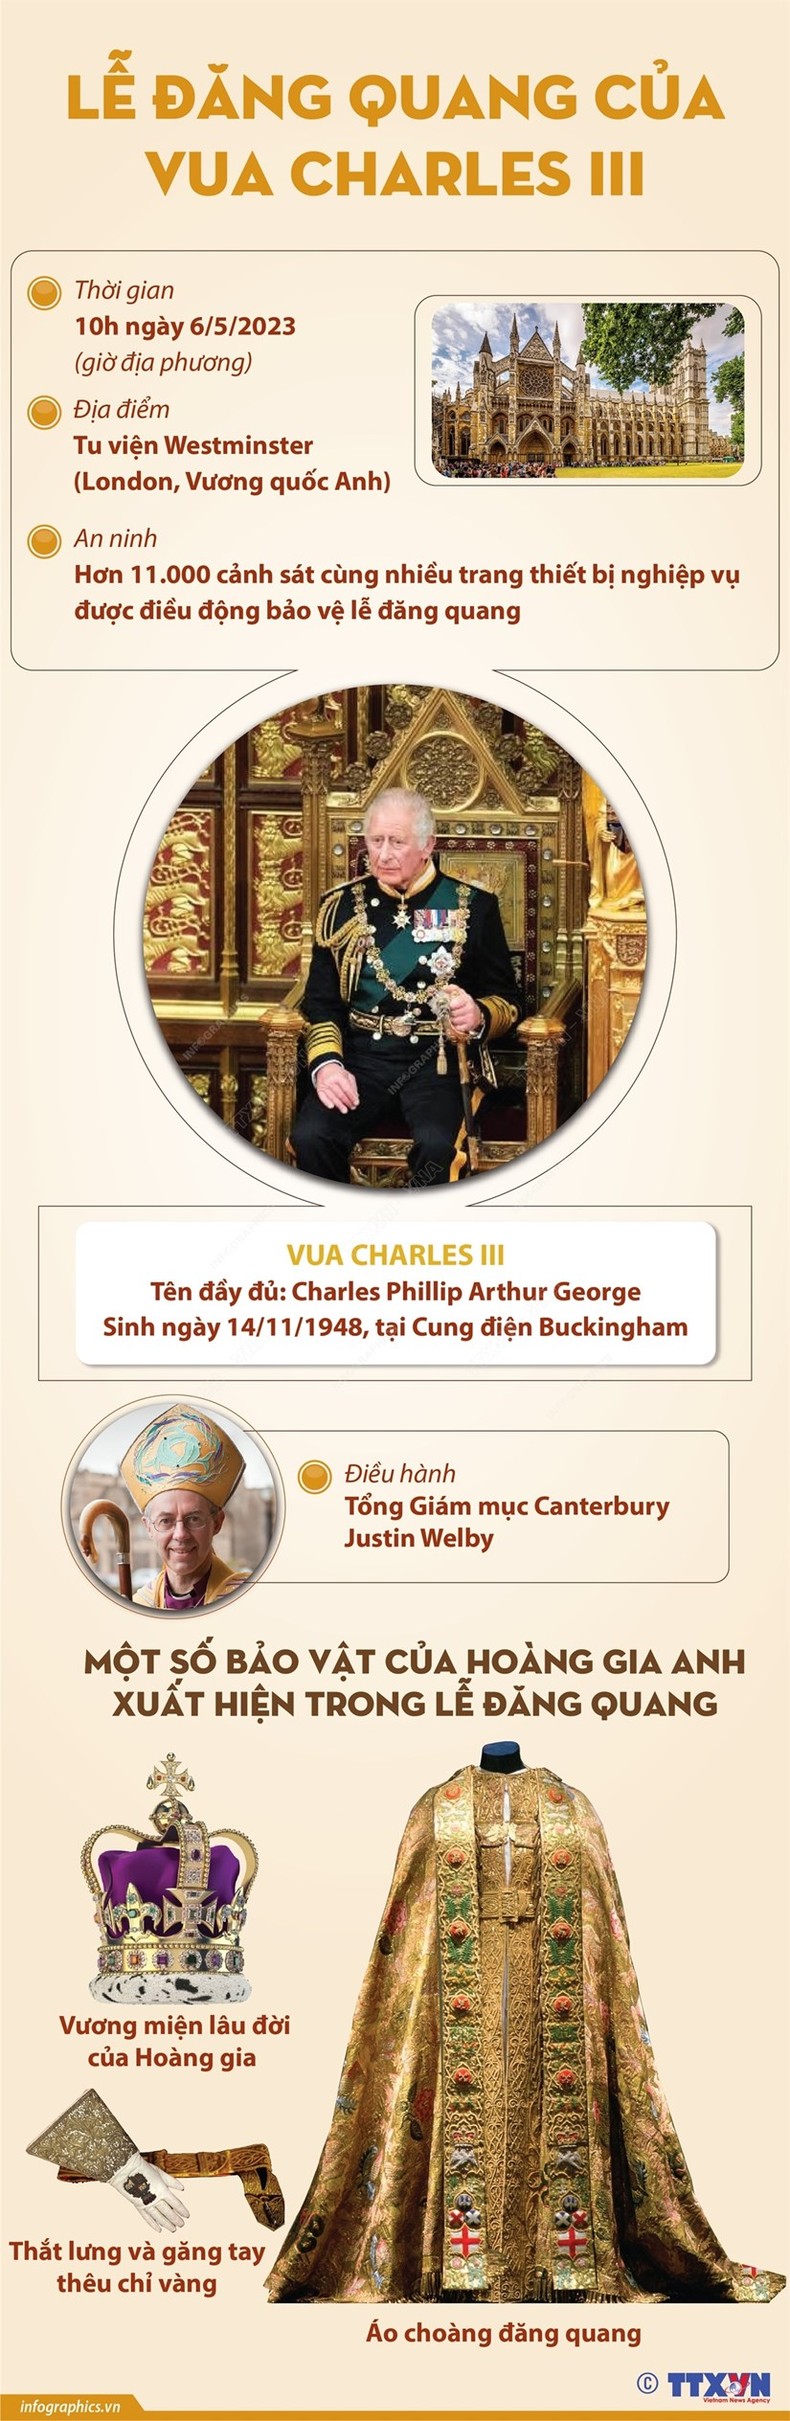 [Infographic] Thông tin chi tiết về Lễ Đăng quang của Vua Charles III ảnh 1